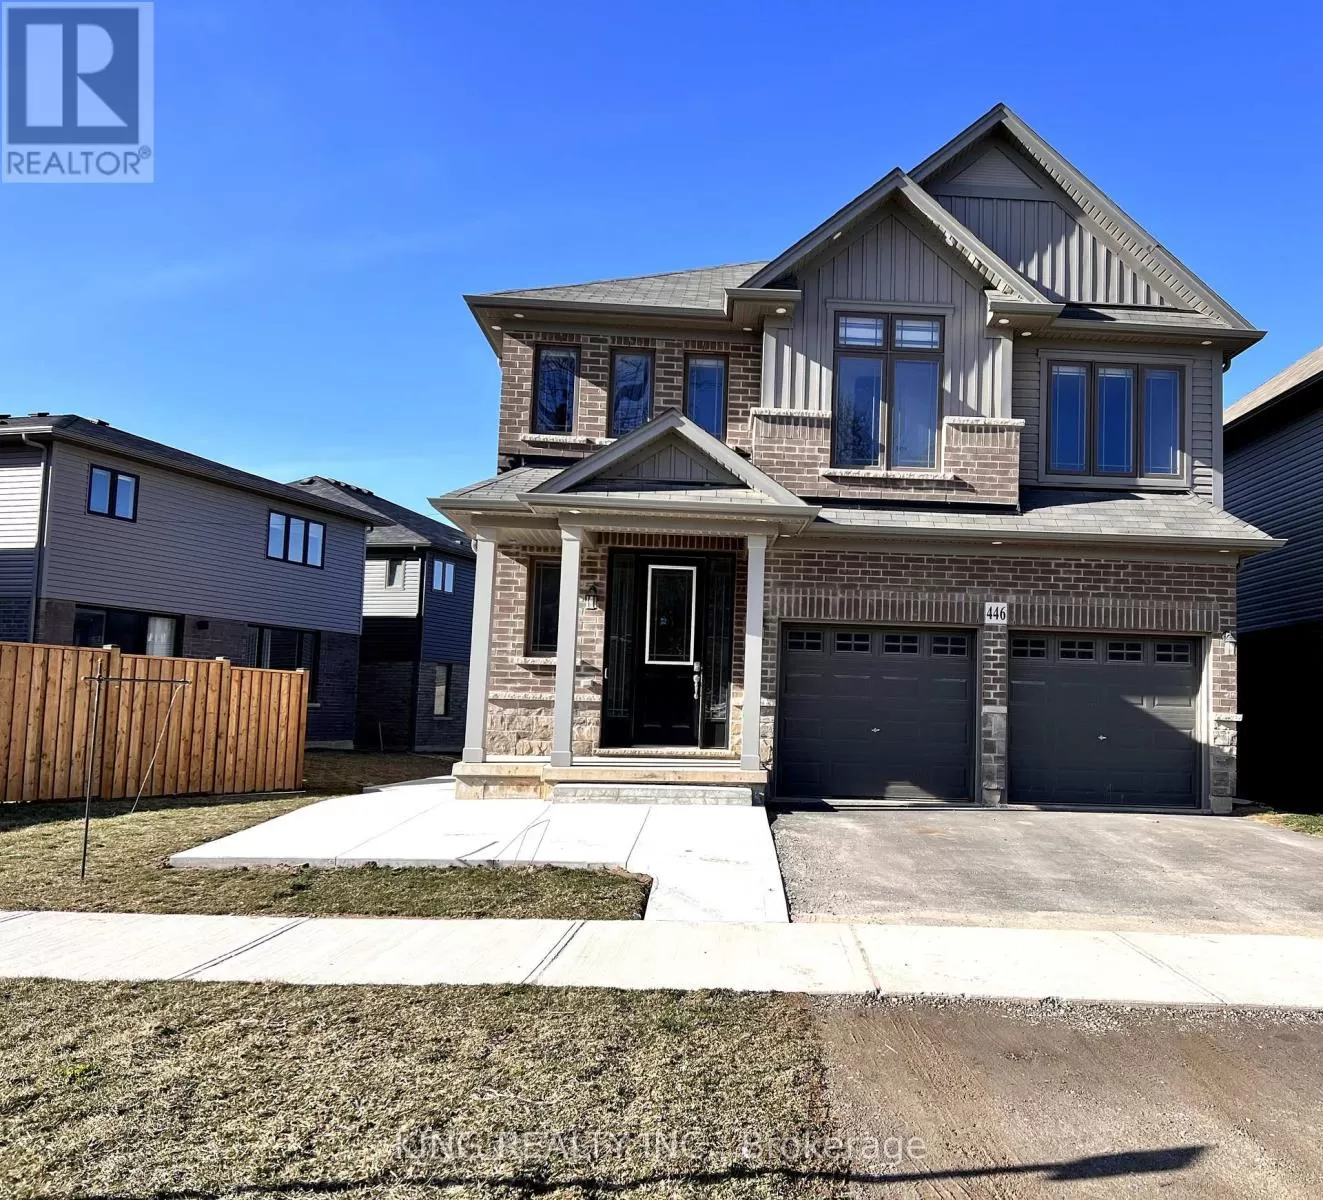 House for rent: 446 Blackburn Dr, Brantford, Ontario N3T 0V5